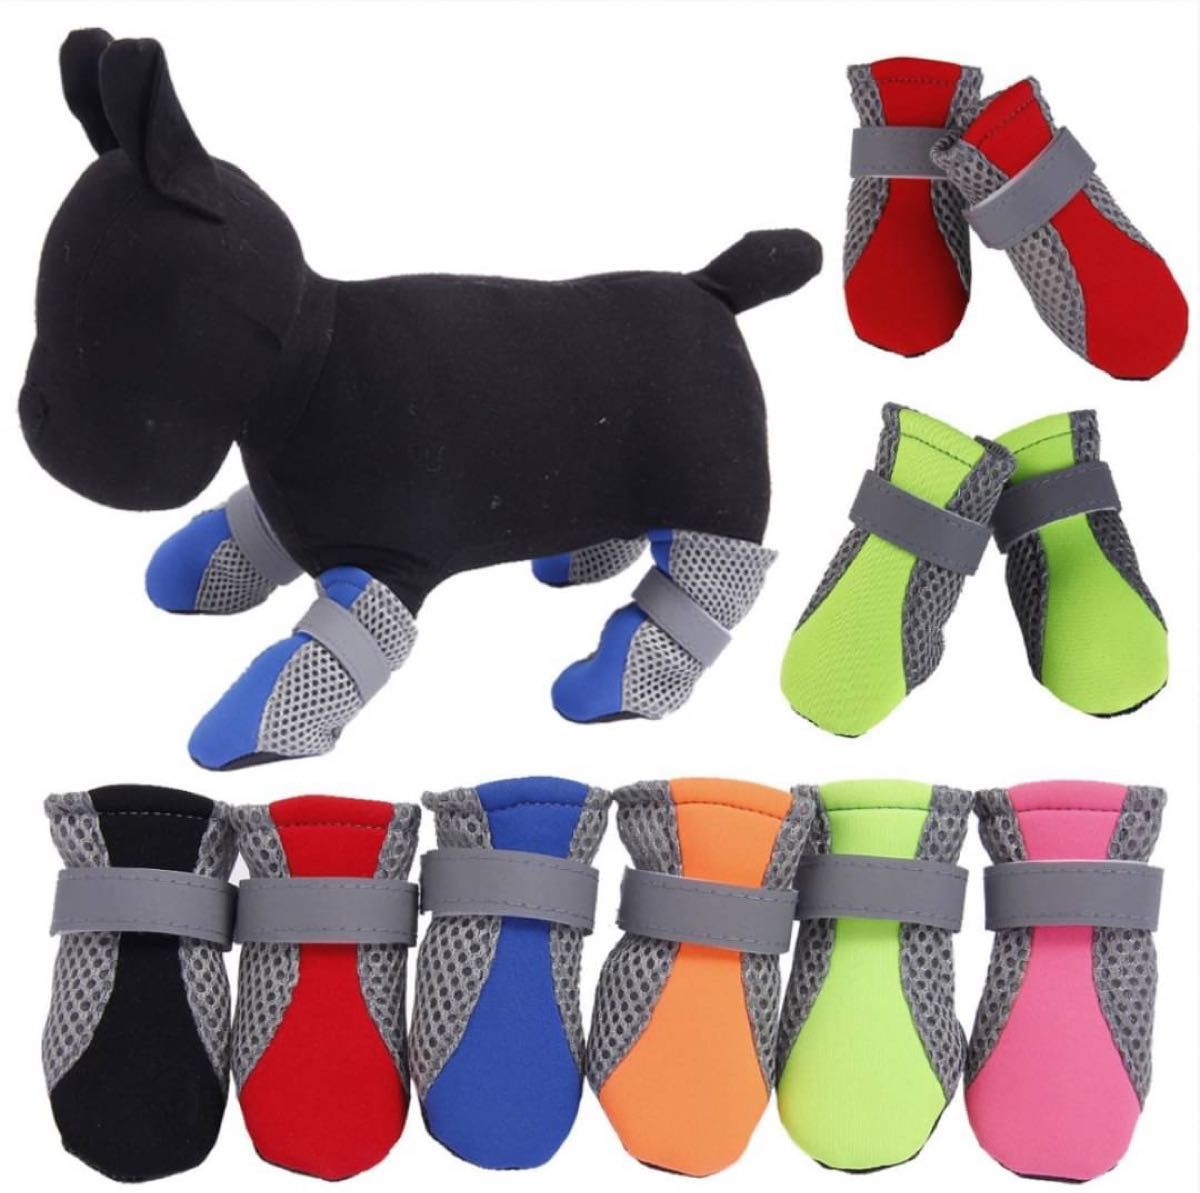 【レッドXL】 ドッグシューズ 靴下 ソックス 4個セット メッシュ 肉球保護 ペット 怪我防止 マジックテープ 小型犬 靴 赤